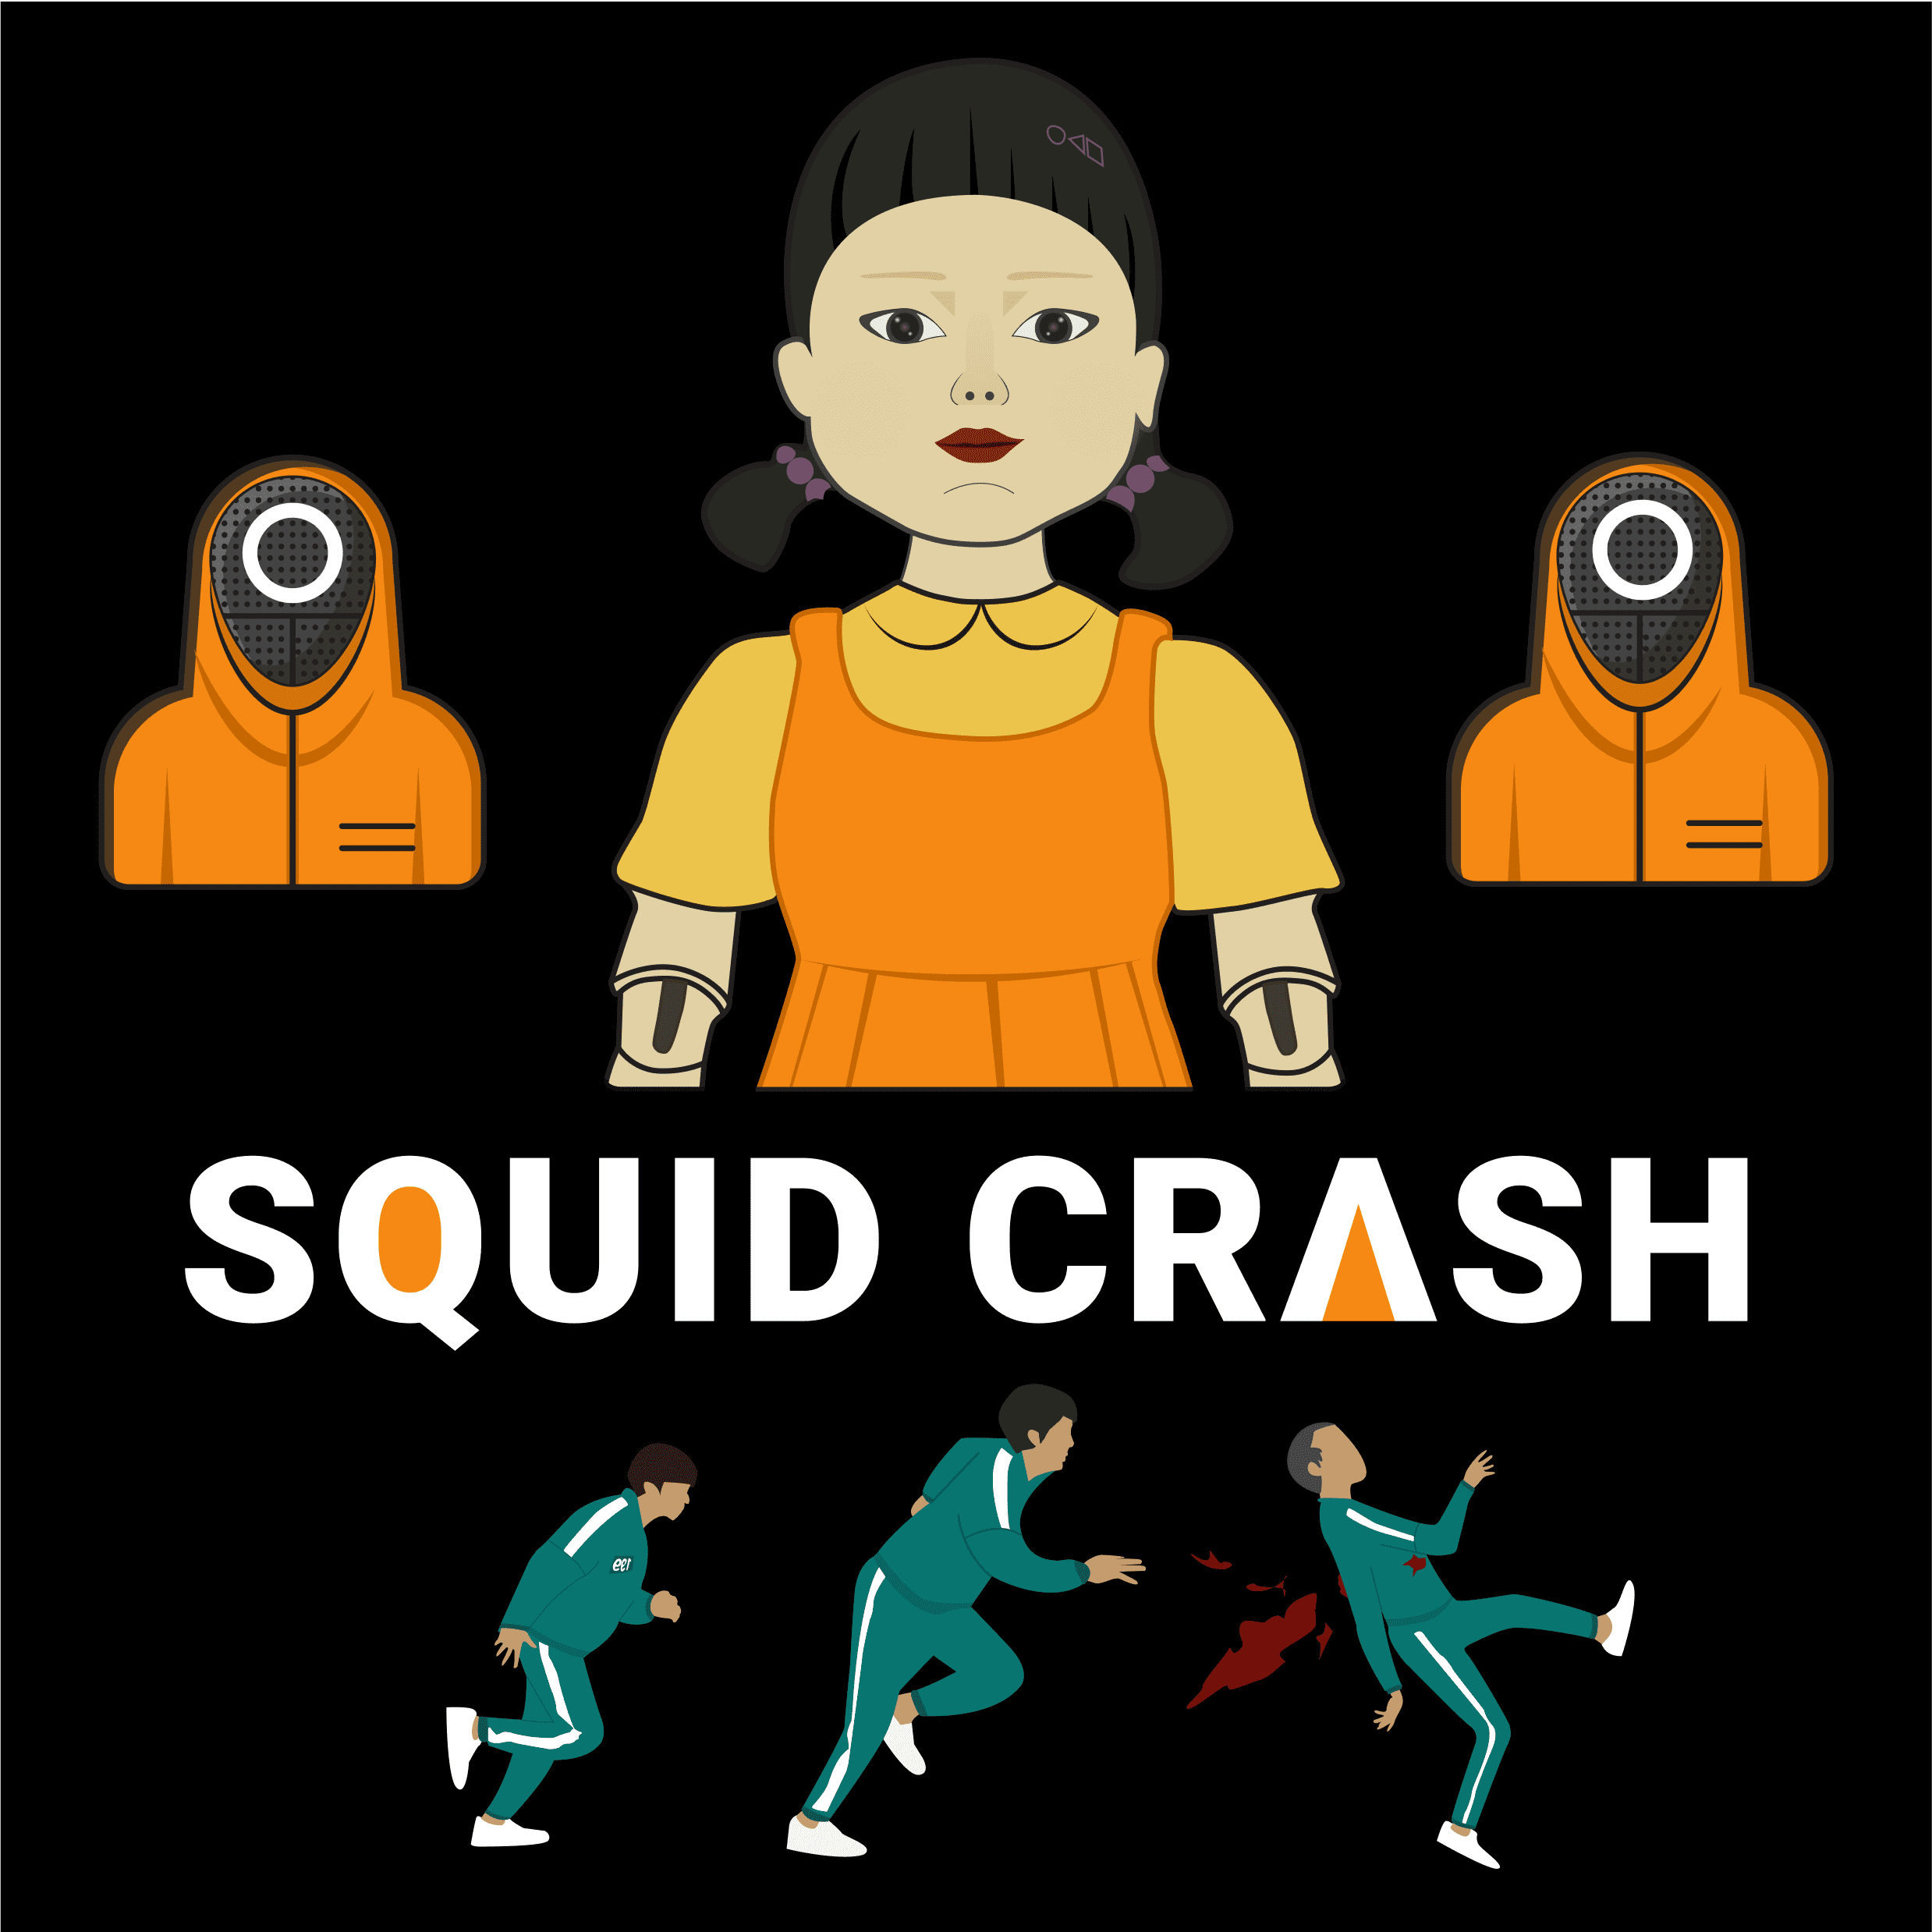 Squid crash